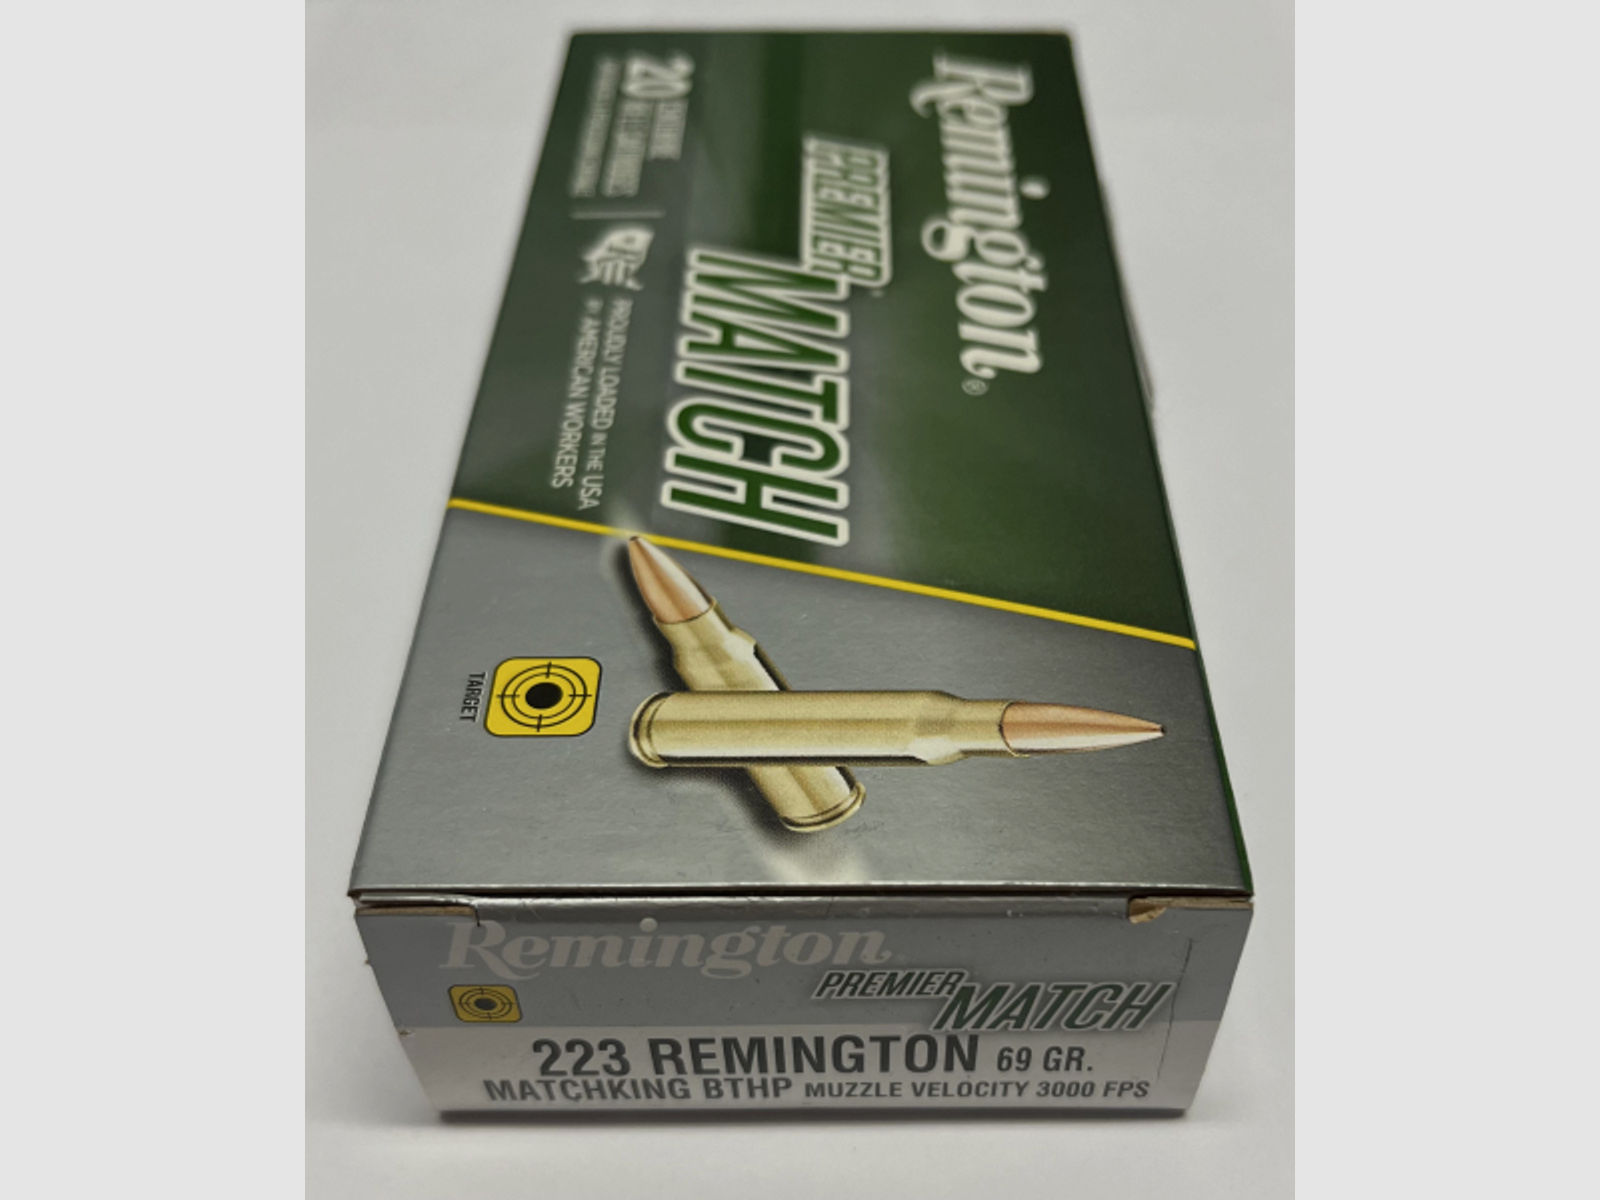 1 Karton Remington .223 Rem. PremierMatch